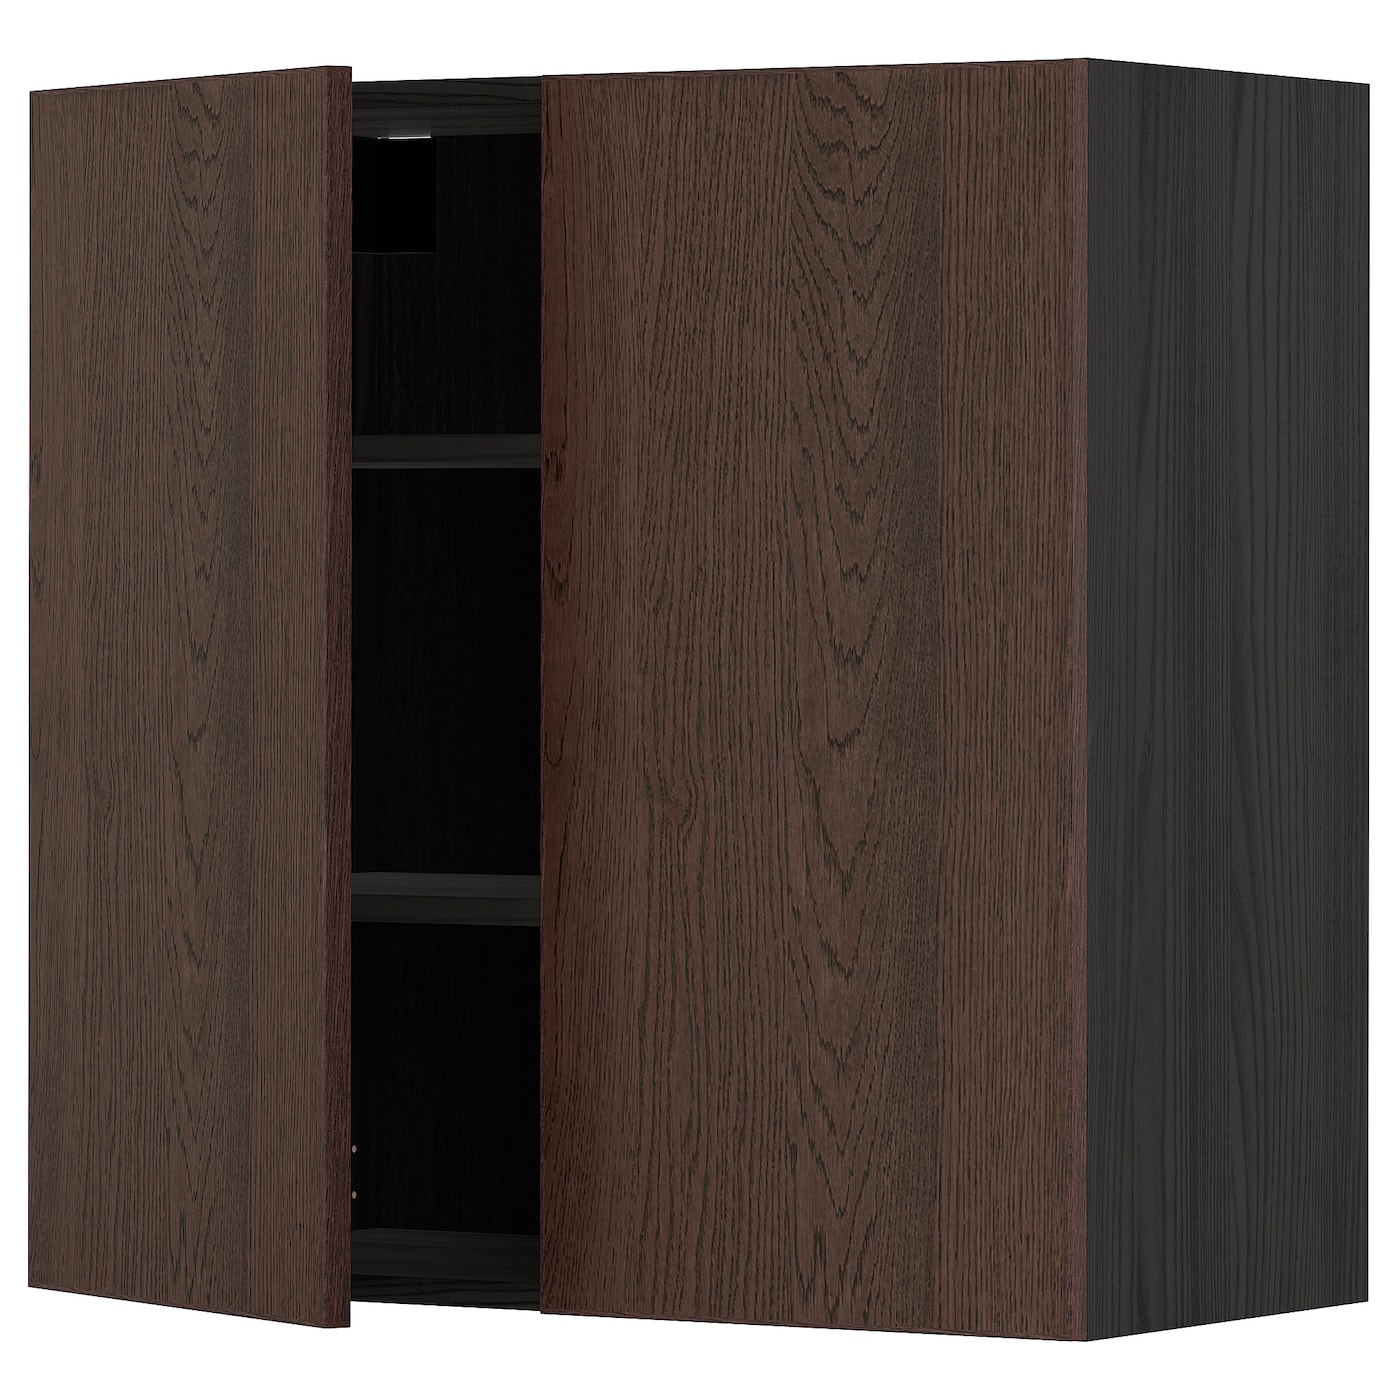 Навесной шкаф с полкой - METOD IKEA/ МЕТОД ИКЕА, 80х80 см, черный/коричневый